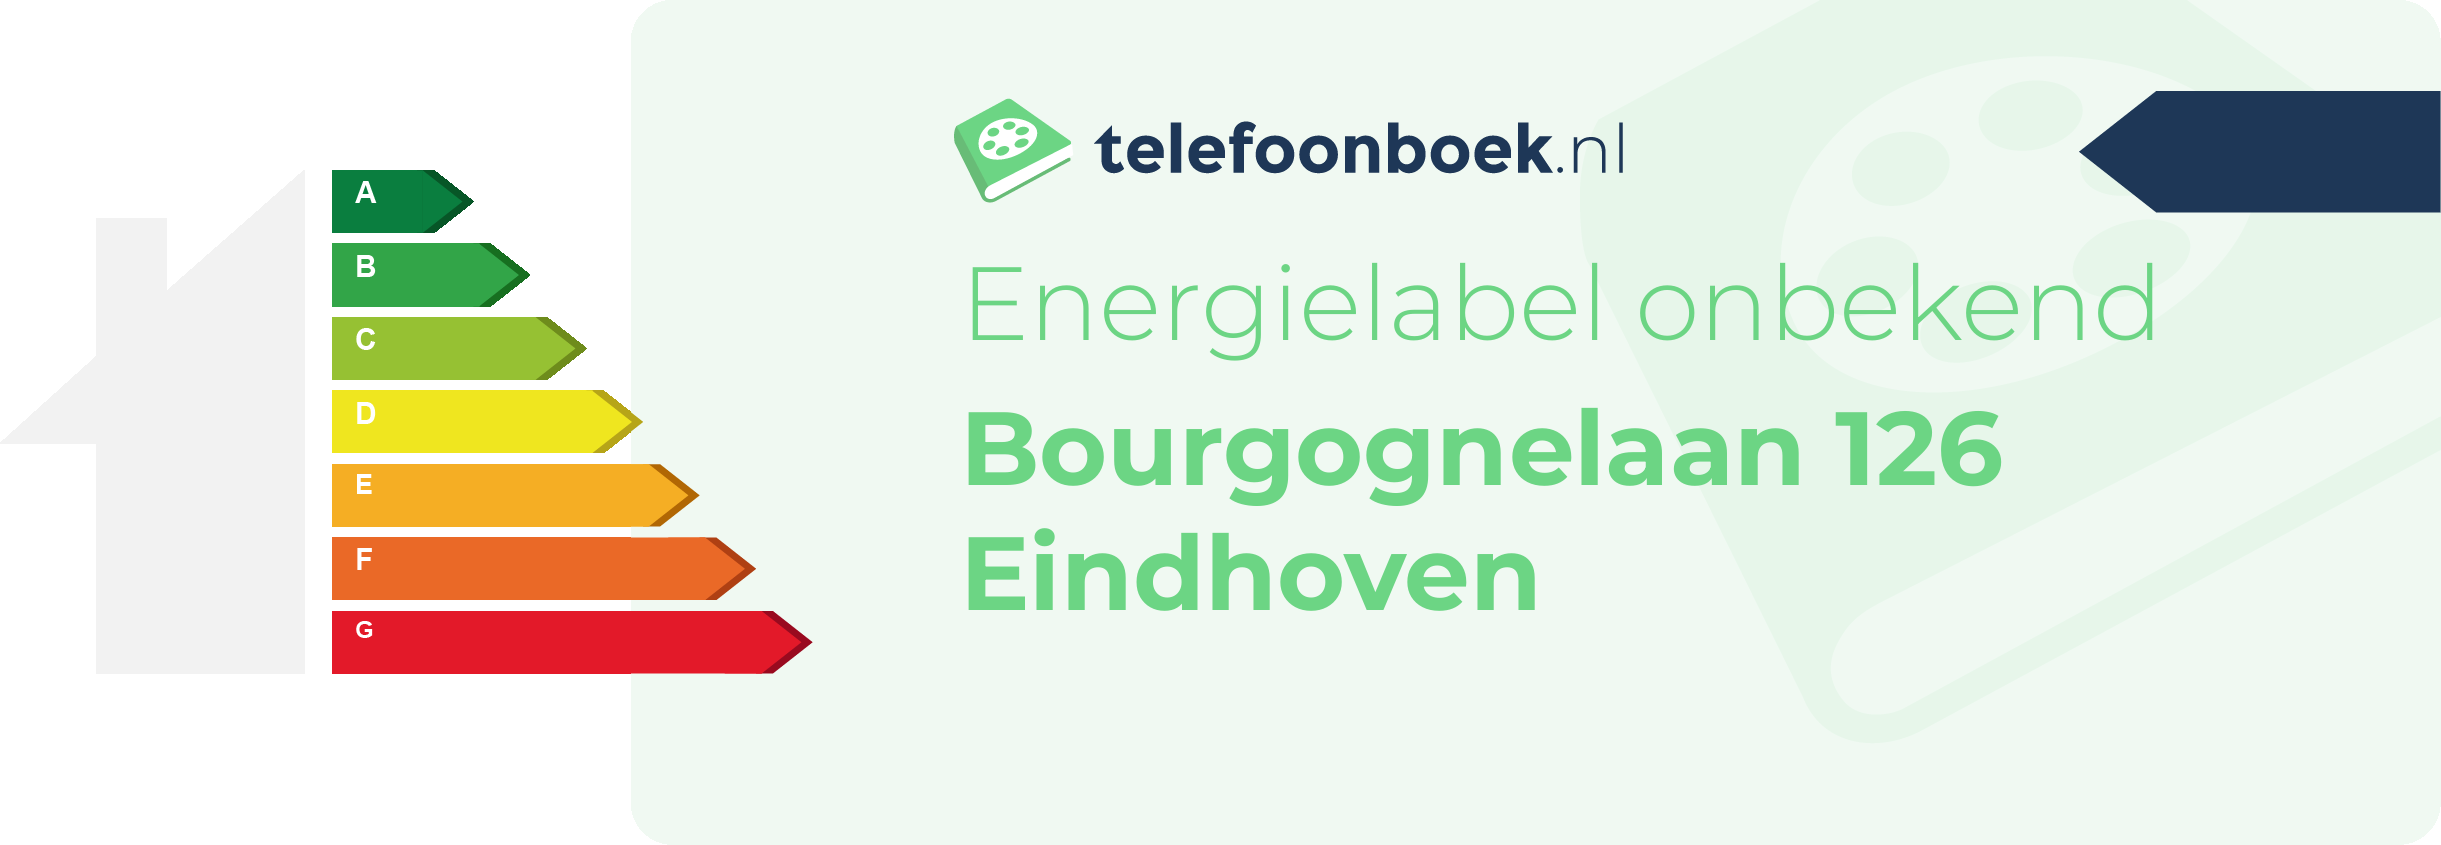 Energielabel Bourgognelaan 126 Eindhoven